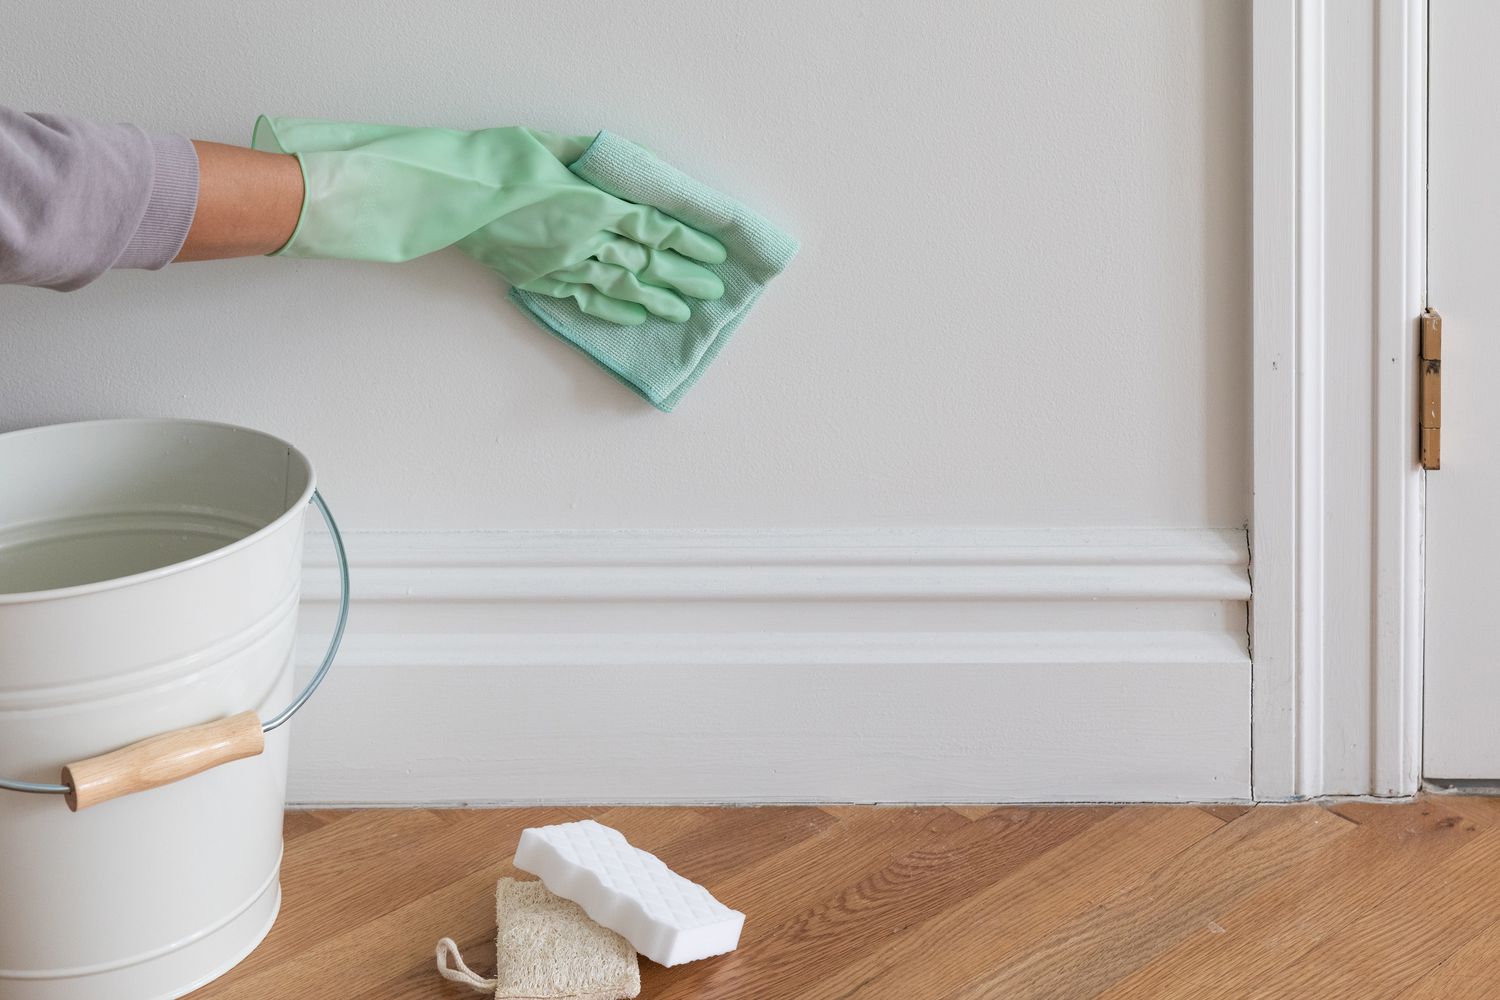 Chúng ta thường xuyên lau chùi sàn nhà, nhưng còn ván chân tường thì sao? Ván chân tường cũng có thể bị bẩn như ván sàn (đặc biệt là có bụi) nhưng thường bị bỏ qua trong ngày vệ sinh. Có nhiều cách để làm sạch ván chân tường , từ sử dụng dụng cụ quét bụi ống lồng đến bàn chải sợi nhỏ và tấm sấy. Sử dụng thứ gì đó khô để lau chúng nếu bạn chỉ muốn loại bỏ bụi và dùng thứ gì đó ẩm bằng chất tẩy rửa hoặc nước nếu bạn muốn làm sạch sâu hơn.